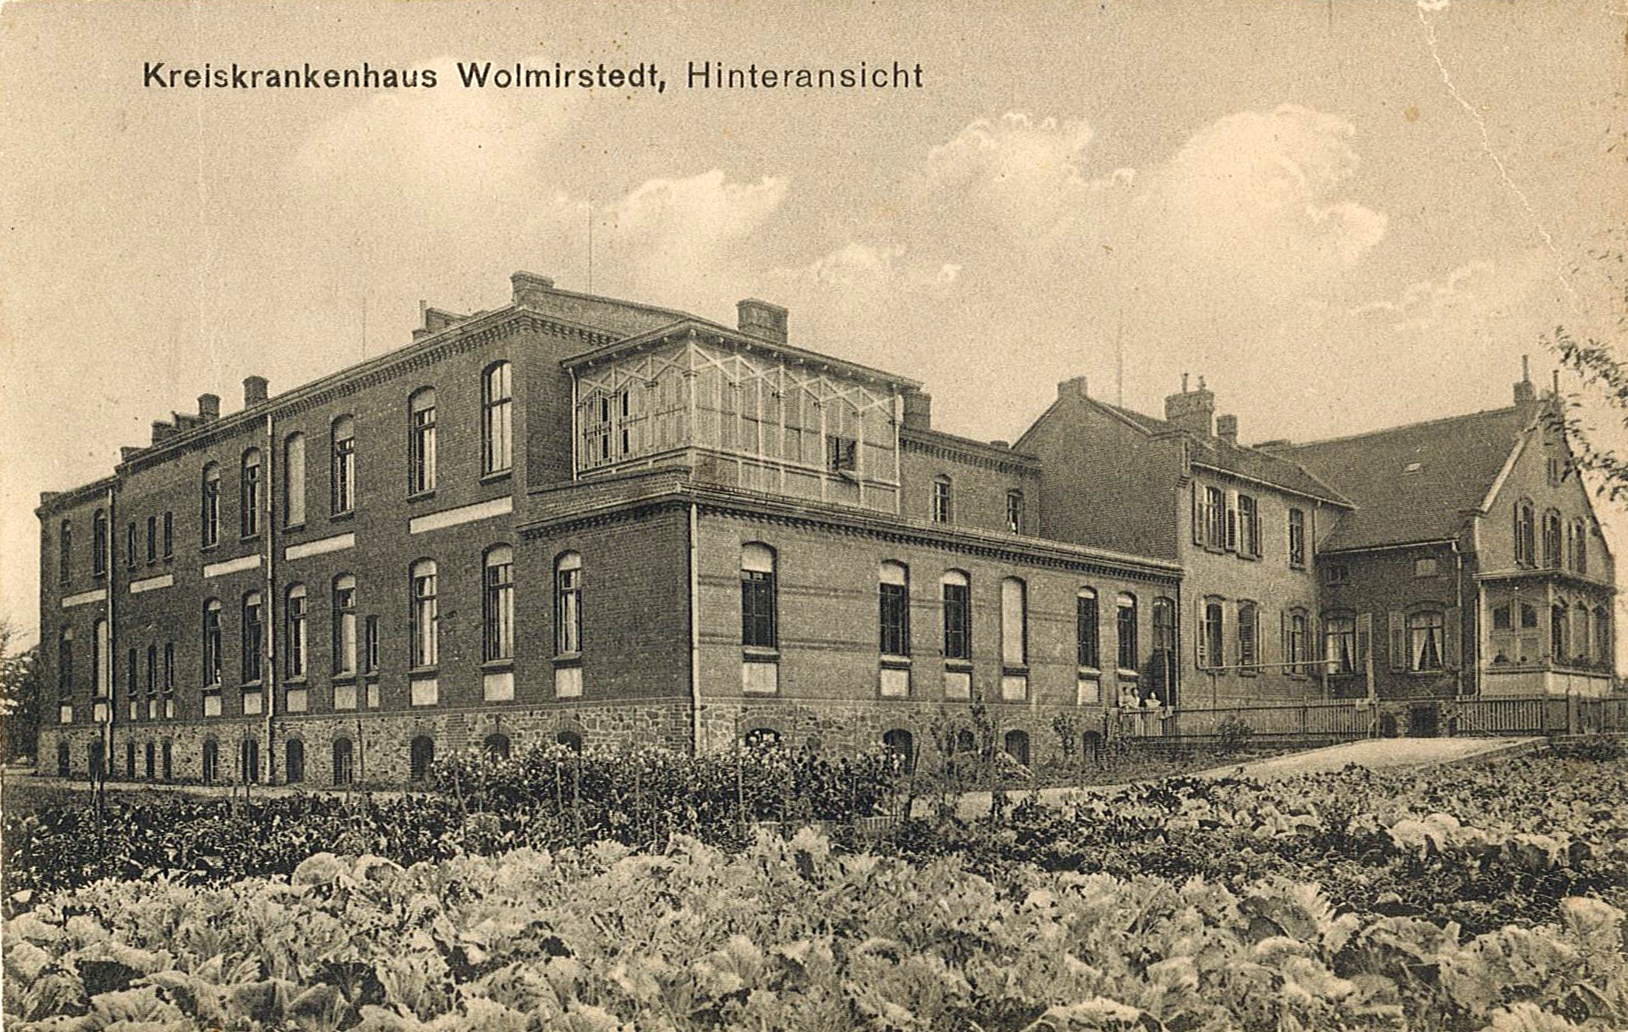 Postkarte mit Hinteransicht des Kreiskrankenhauses Wolmirstedt, 1923? (Museum Wolmirstedt RR-F)